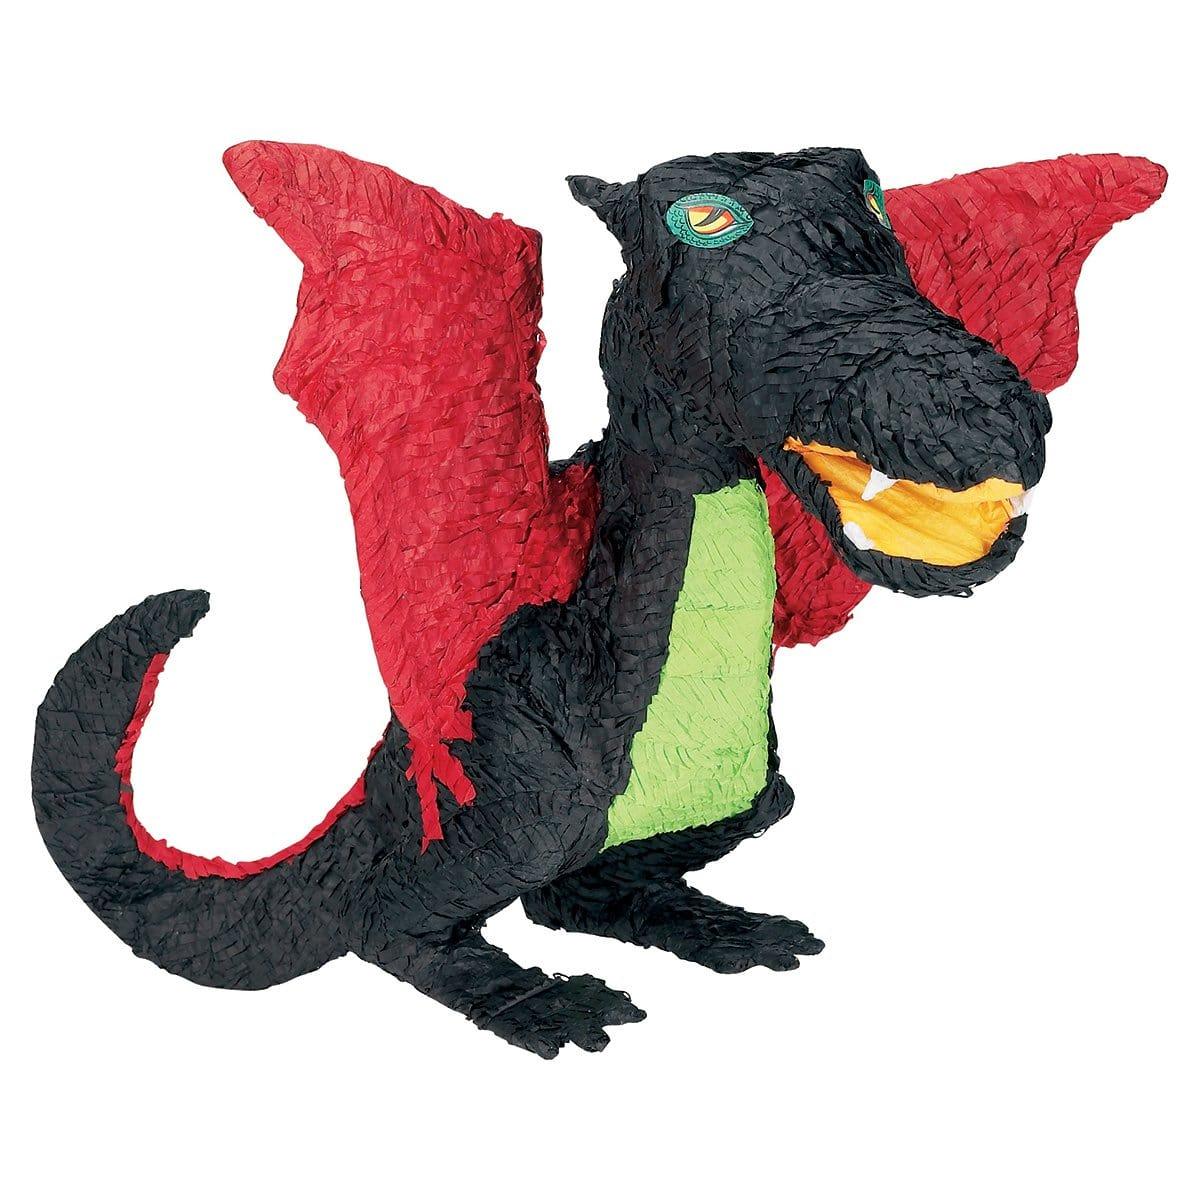 Buy Pinatas Black Dragon Piñata sold at Party Expert